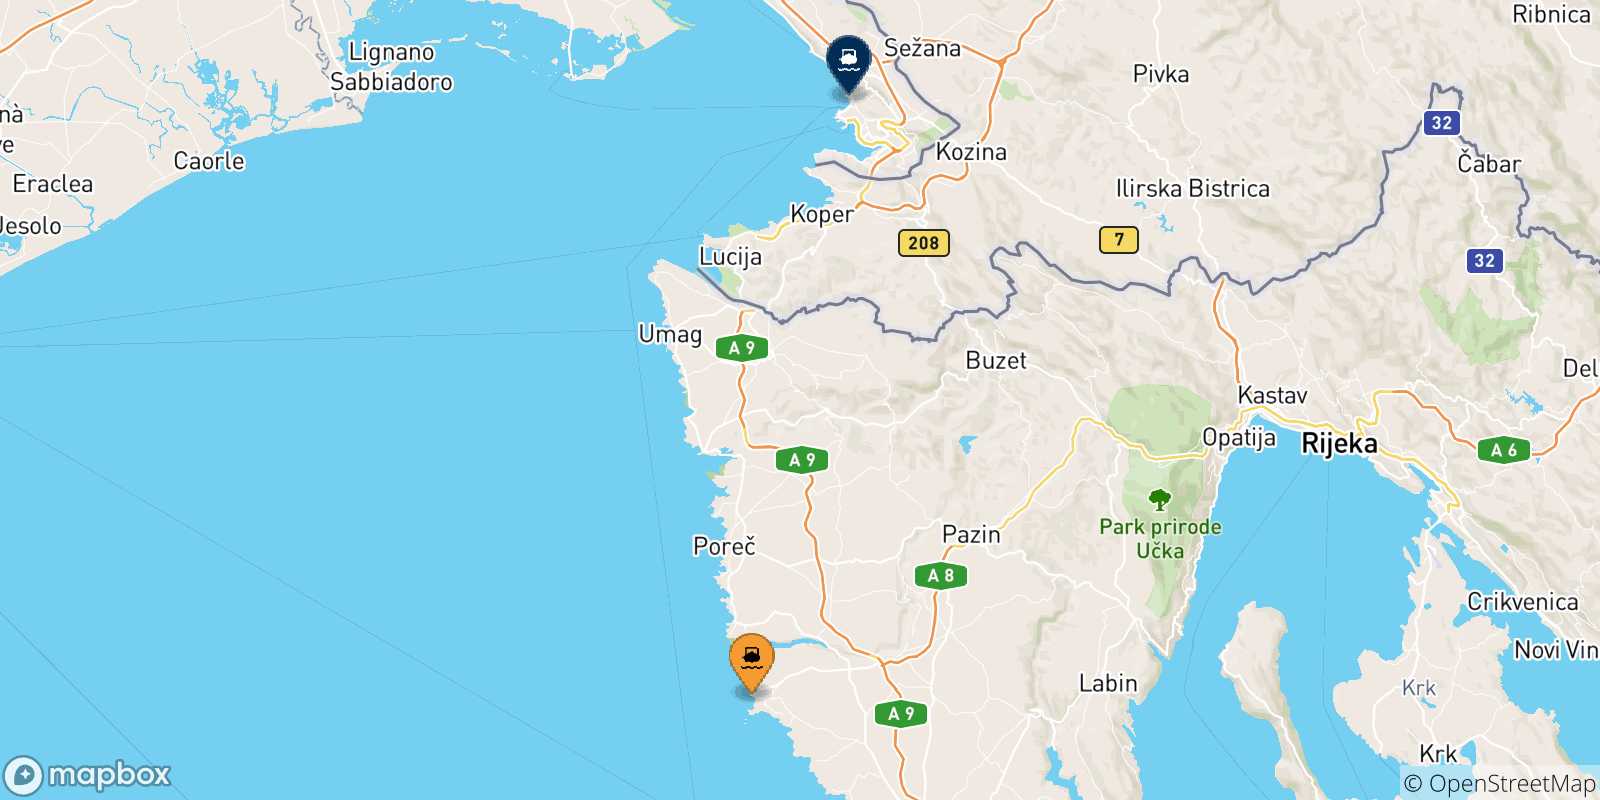 Carte des traversées possibles entre la Croatie et Trieste